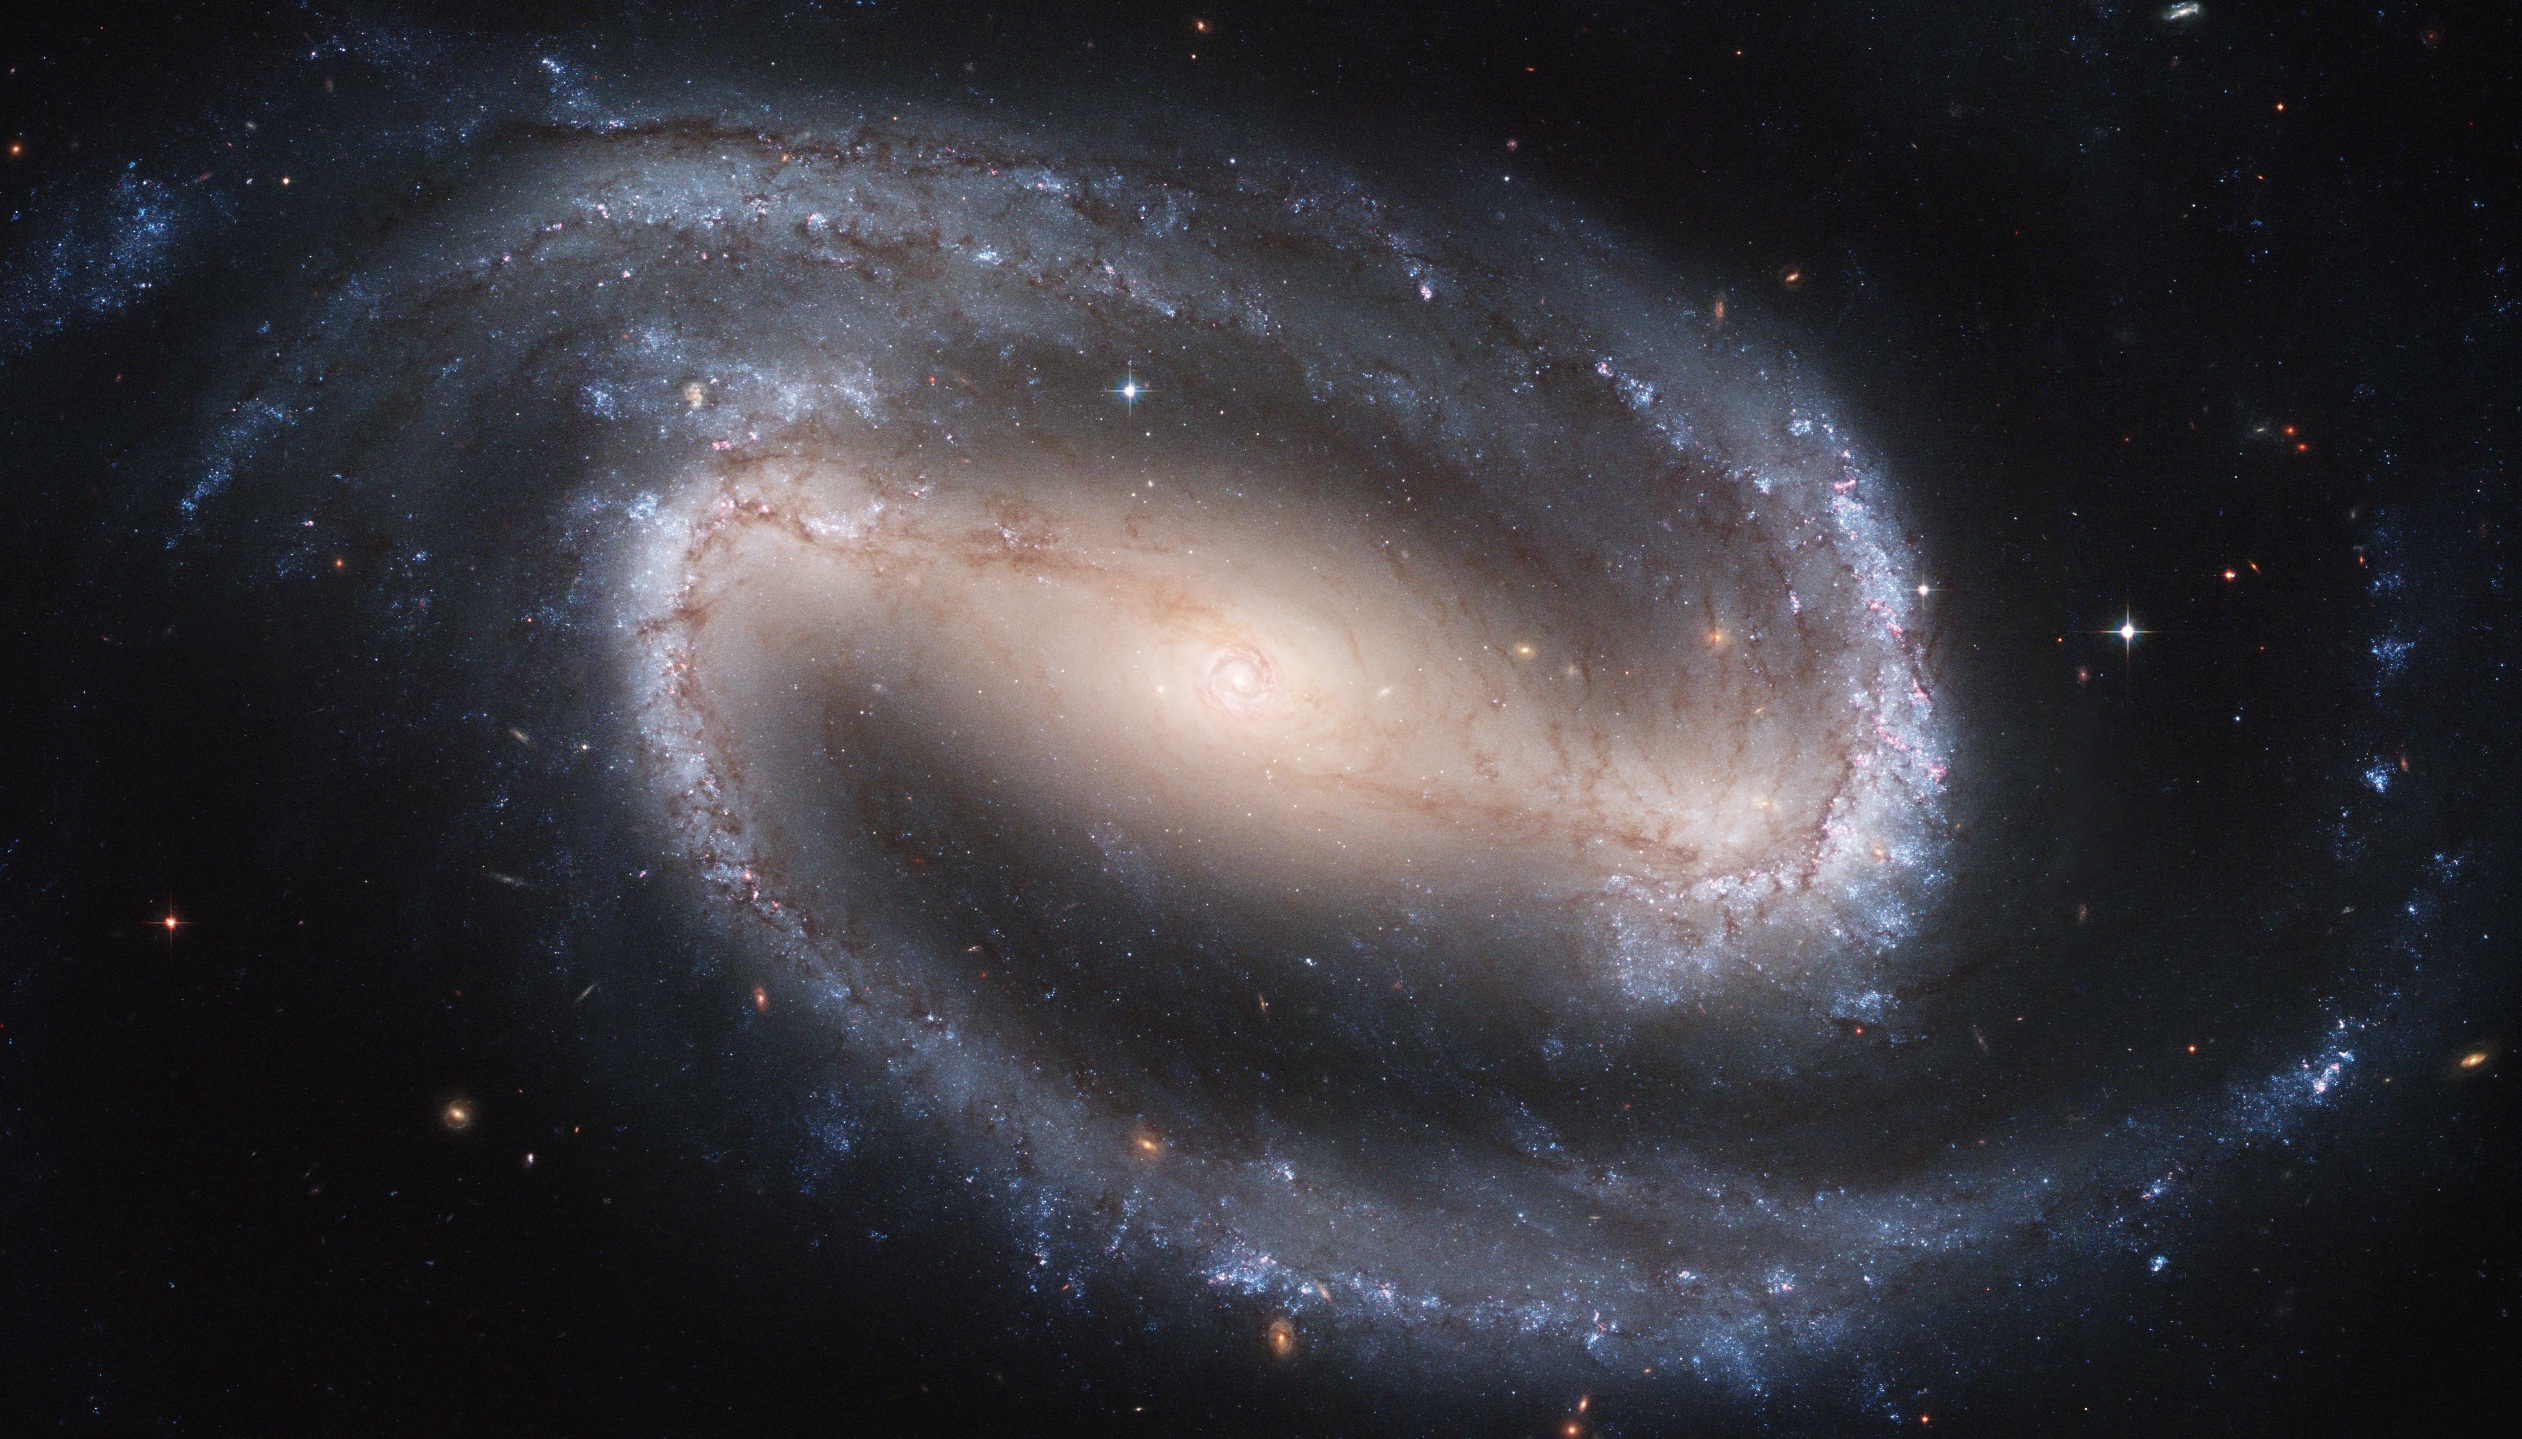 Une photo prise par le télescope spatial Hubble de NGC 1300. Cette&nbsp;galaxie spirale barrée est située à 69 millions d'années-lumière de nous en direction de&nbsp;la constellation de l'Éridan. Elle fait partie de ces galaxies possédant une grande barre centrale. Celle-ci&nbsp;contient une spirale de 3.300 années-lumière. © Wikipédia, DP